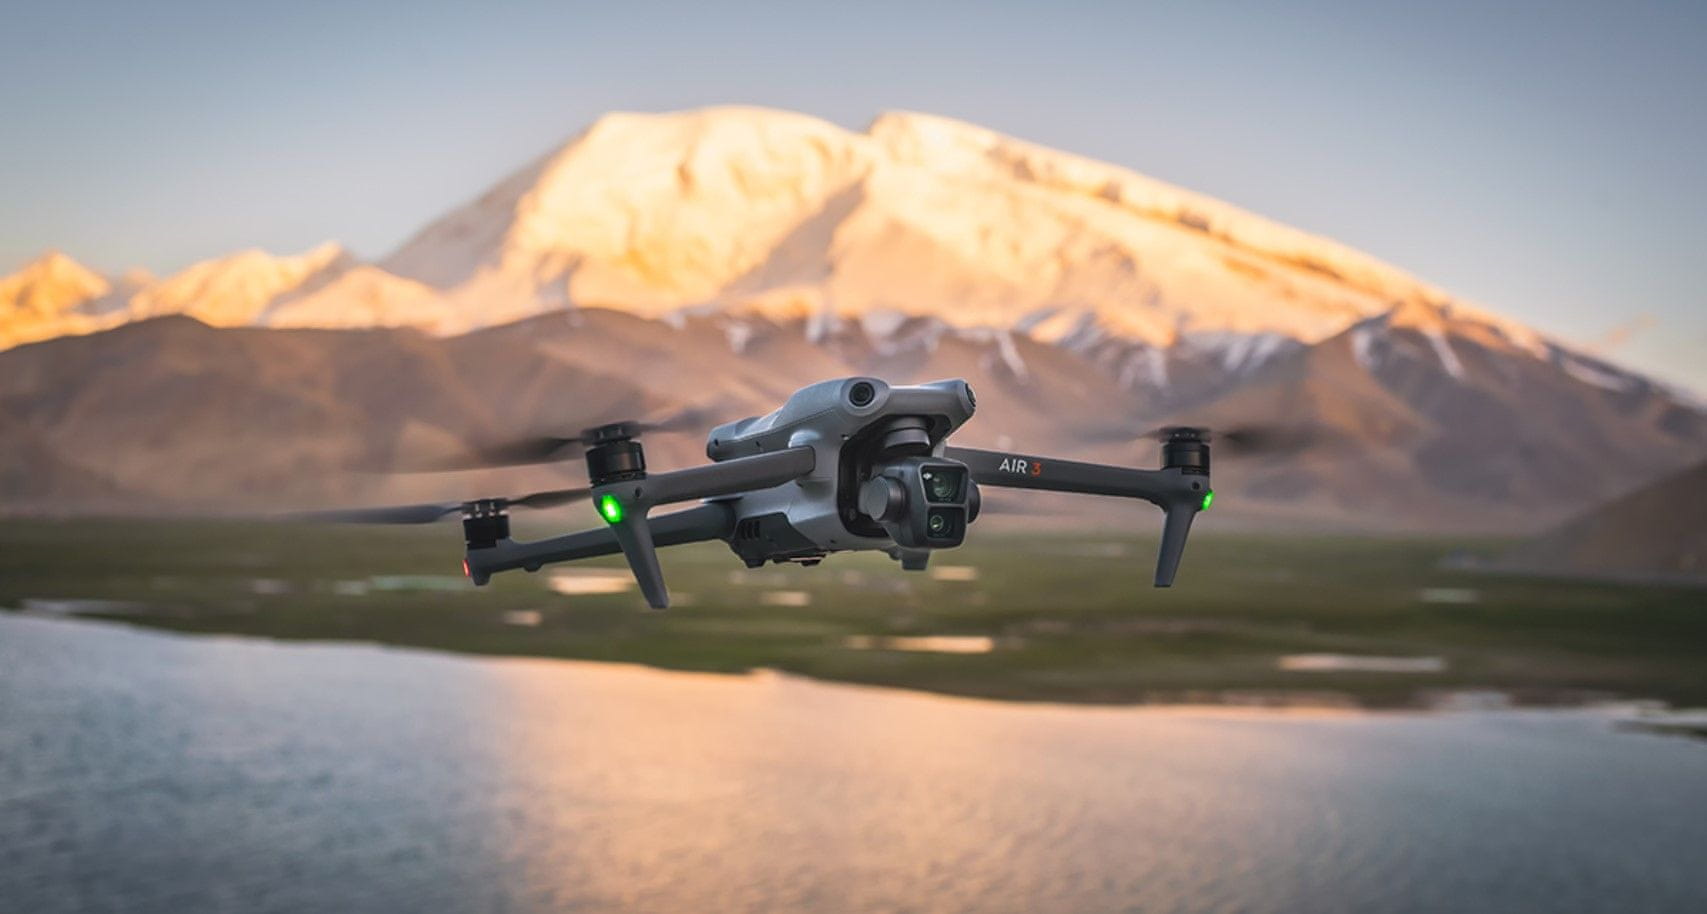  moderní dron dji air 3 skládací microSD malé rozměry 4k hdr videa skvělá kvalita stabilita fotografický režim 